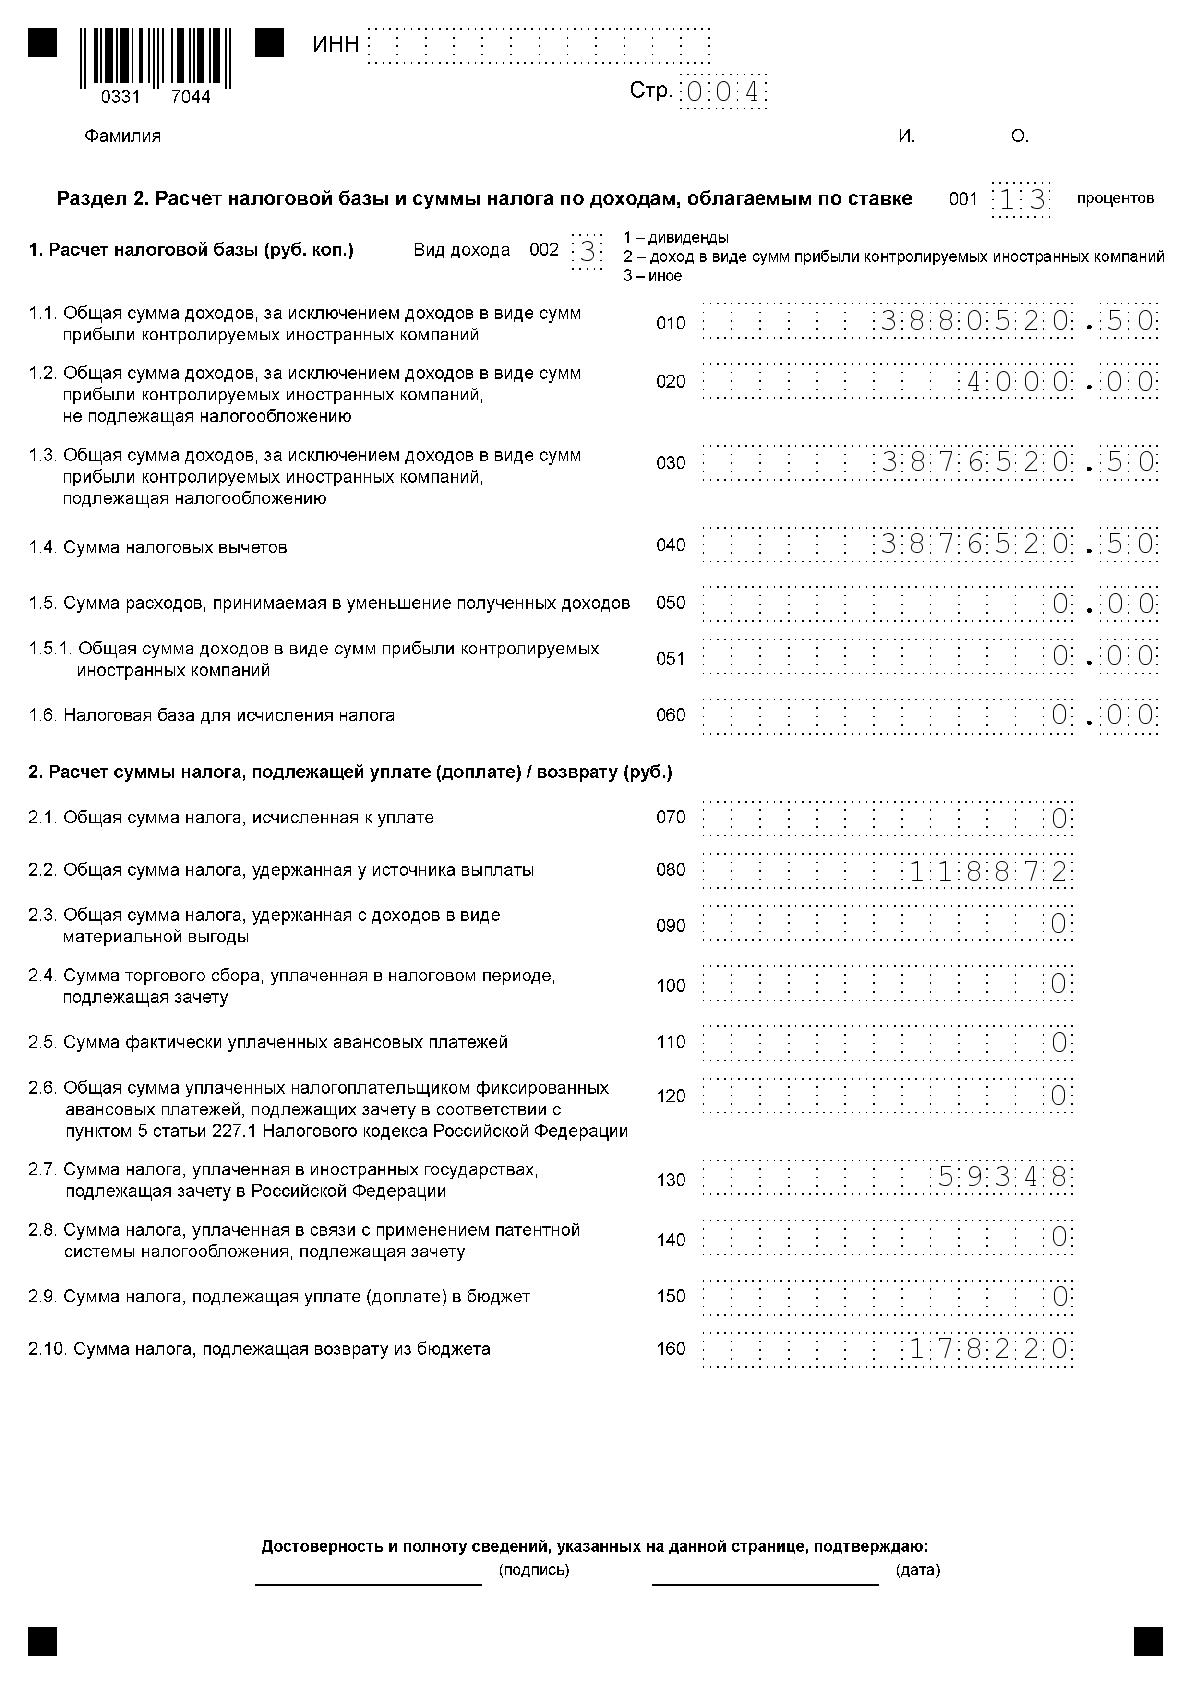 Примеры заполнения налоговой декларации по налогу на доходы физических лиц за 2020 год (Форма 3-НДФЛ)